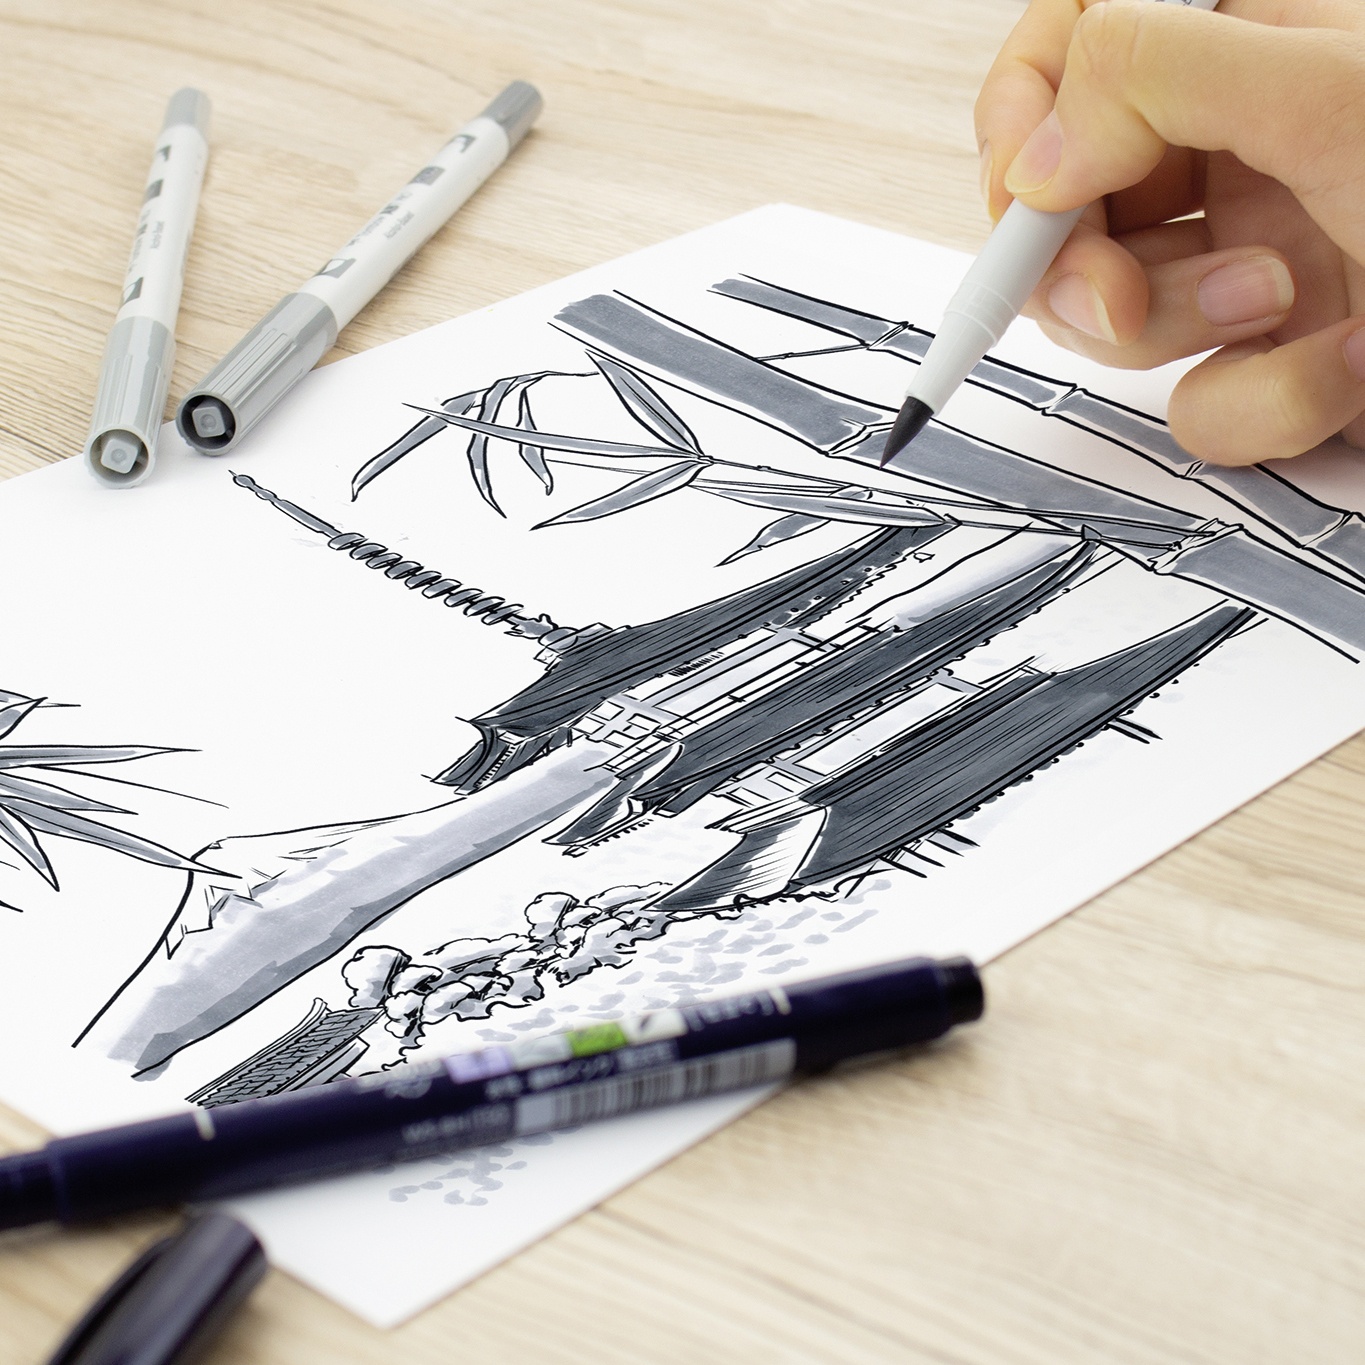 ABT PRO Dual Brush Pen 5er-Set Cold Grey in der Gruppe Stifte / Künstlerstifte / Illustrationsmarker bei Pen Store (101259)